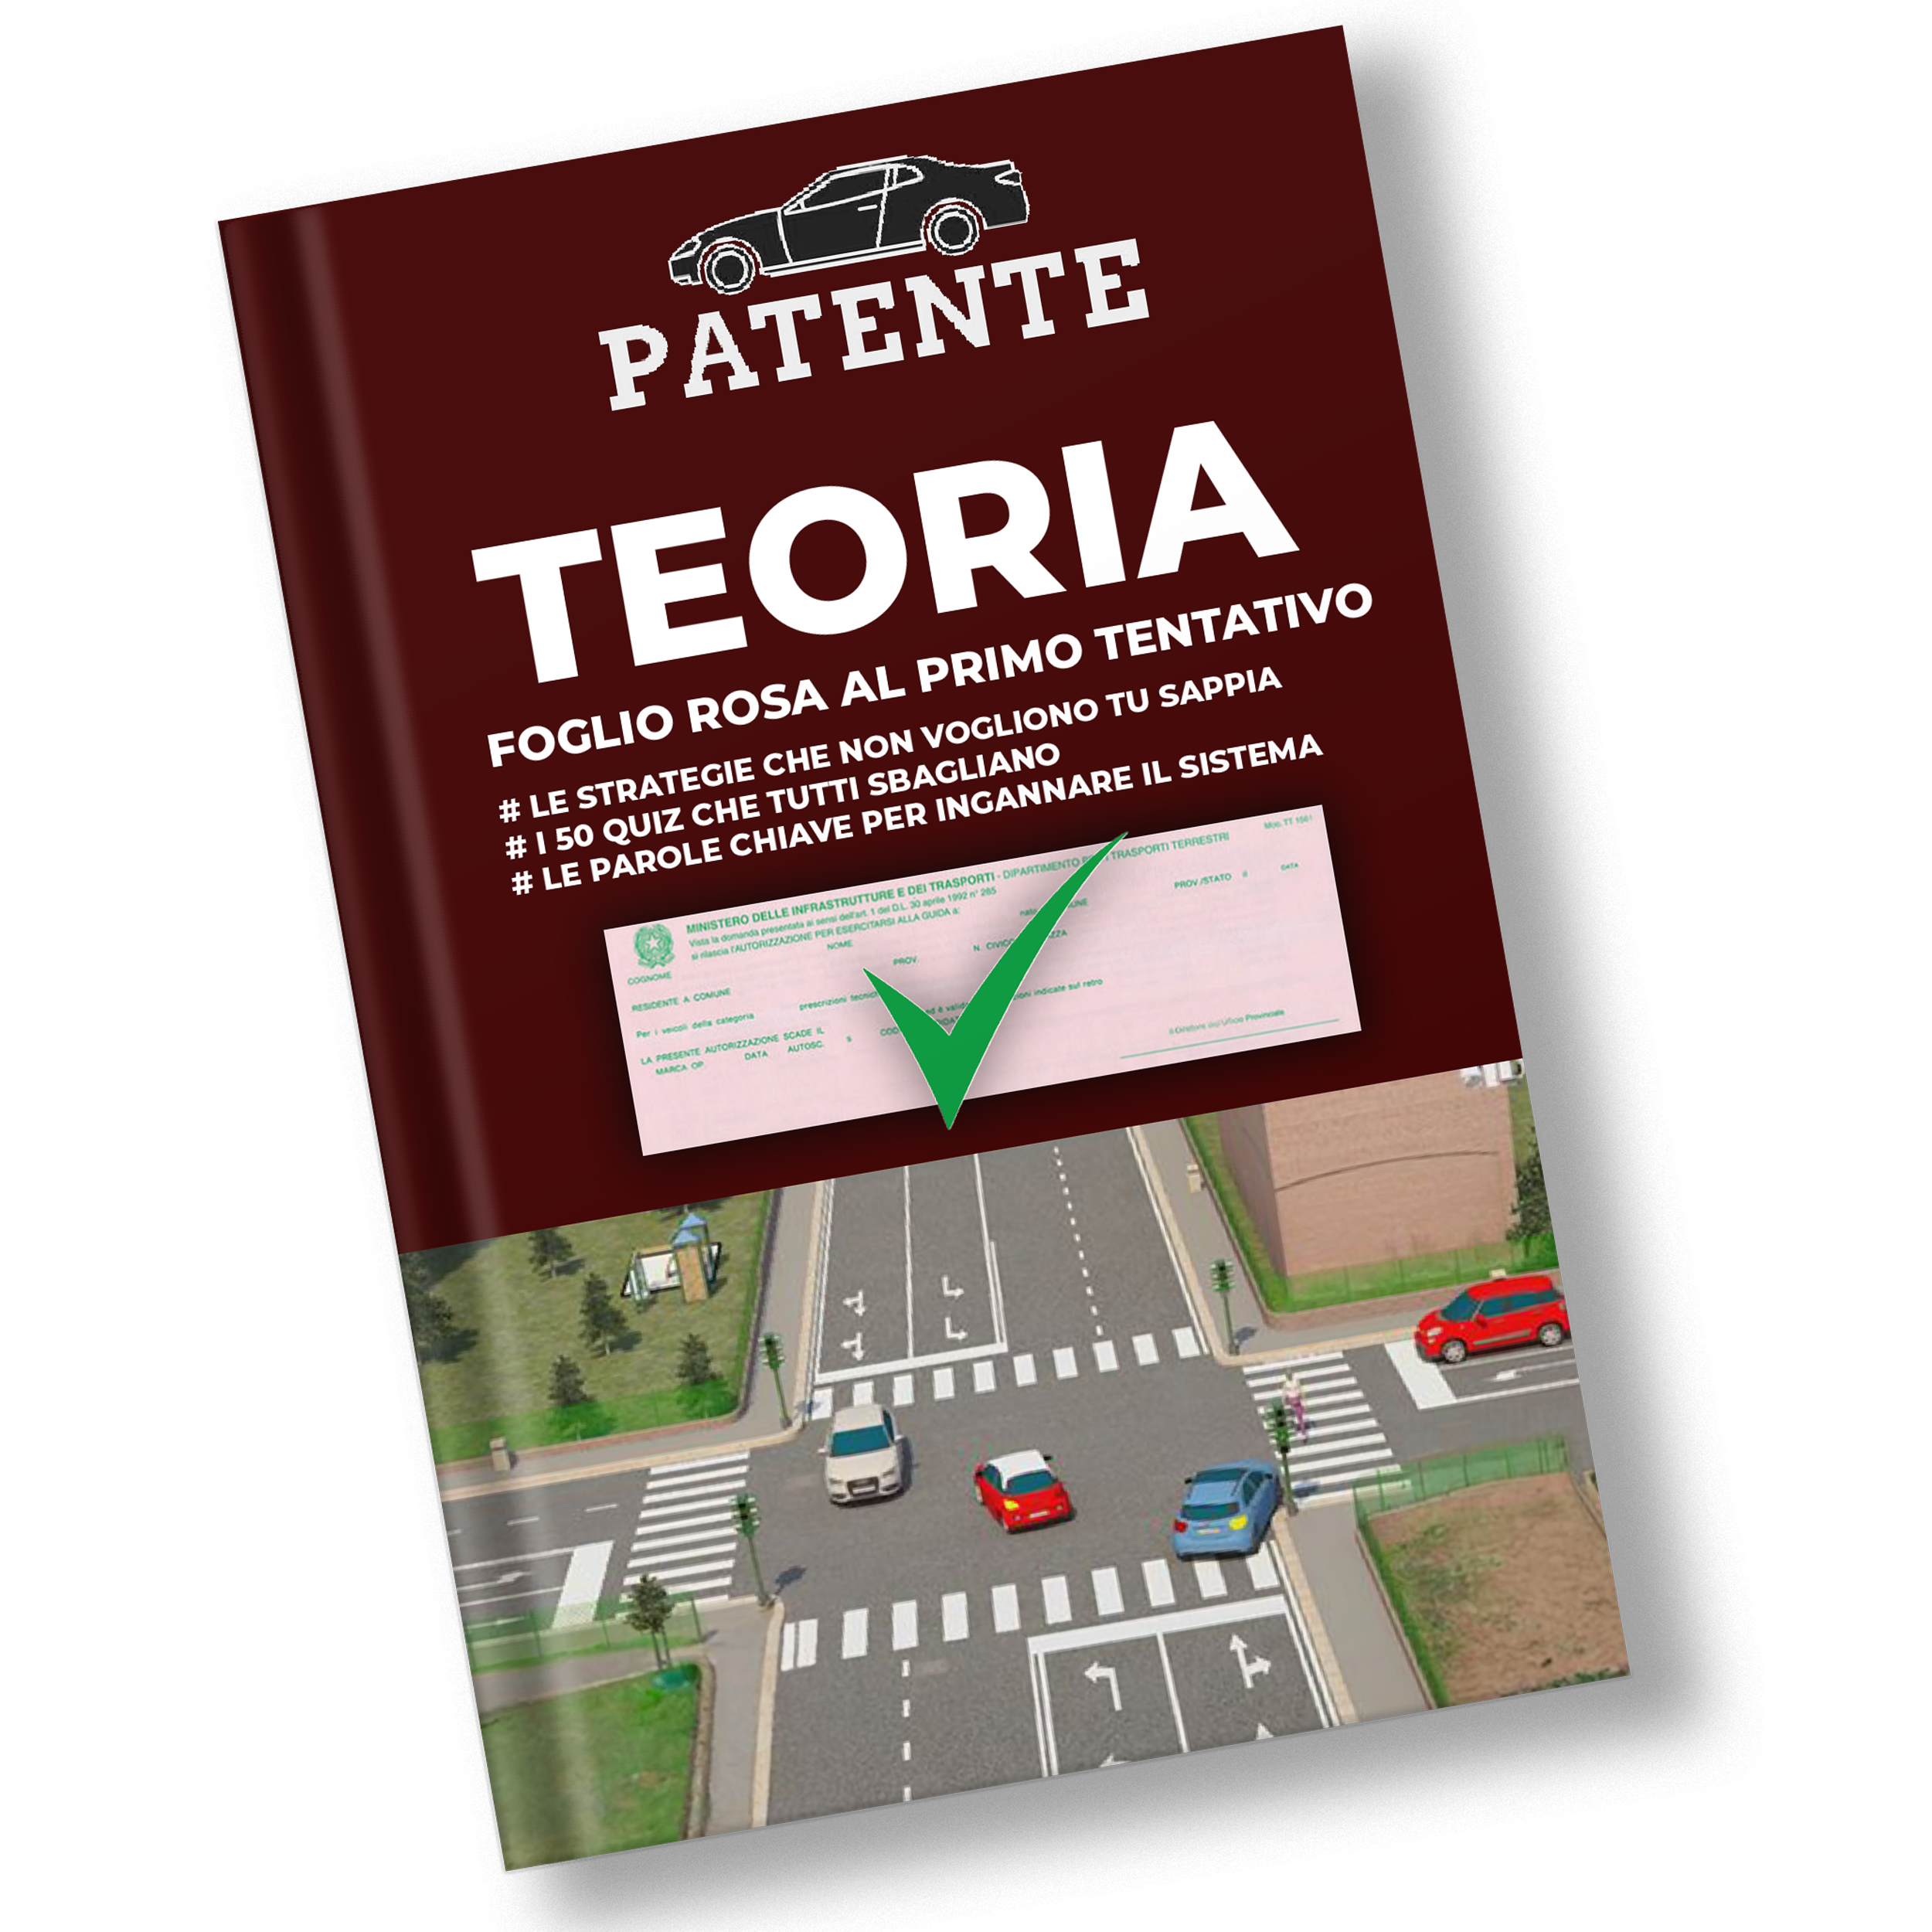 TEORIA PATENTE: Guida completa per superare l’esame Teorico della Patente B - E-BOOK DIGITALE